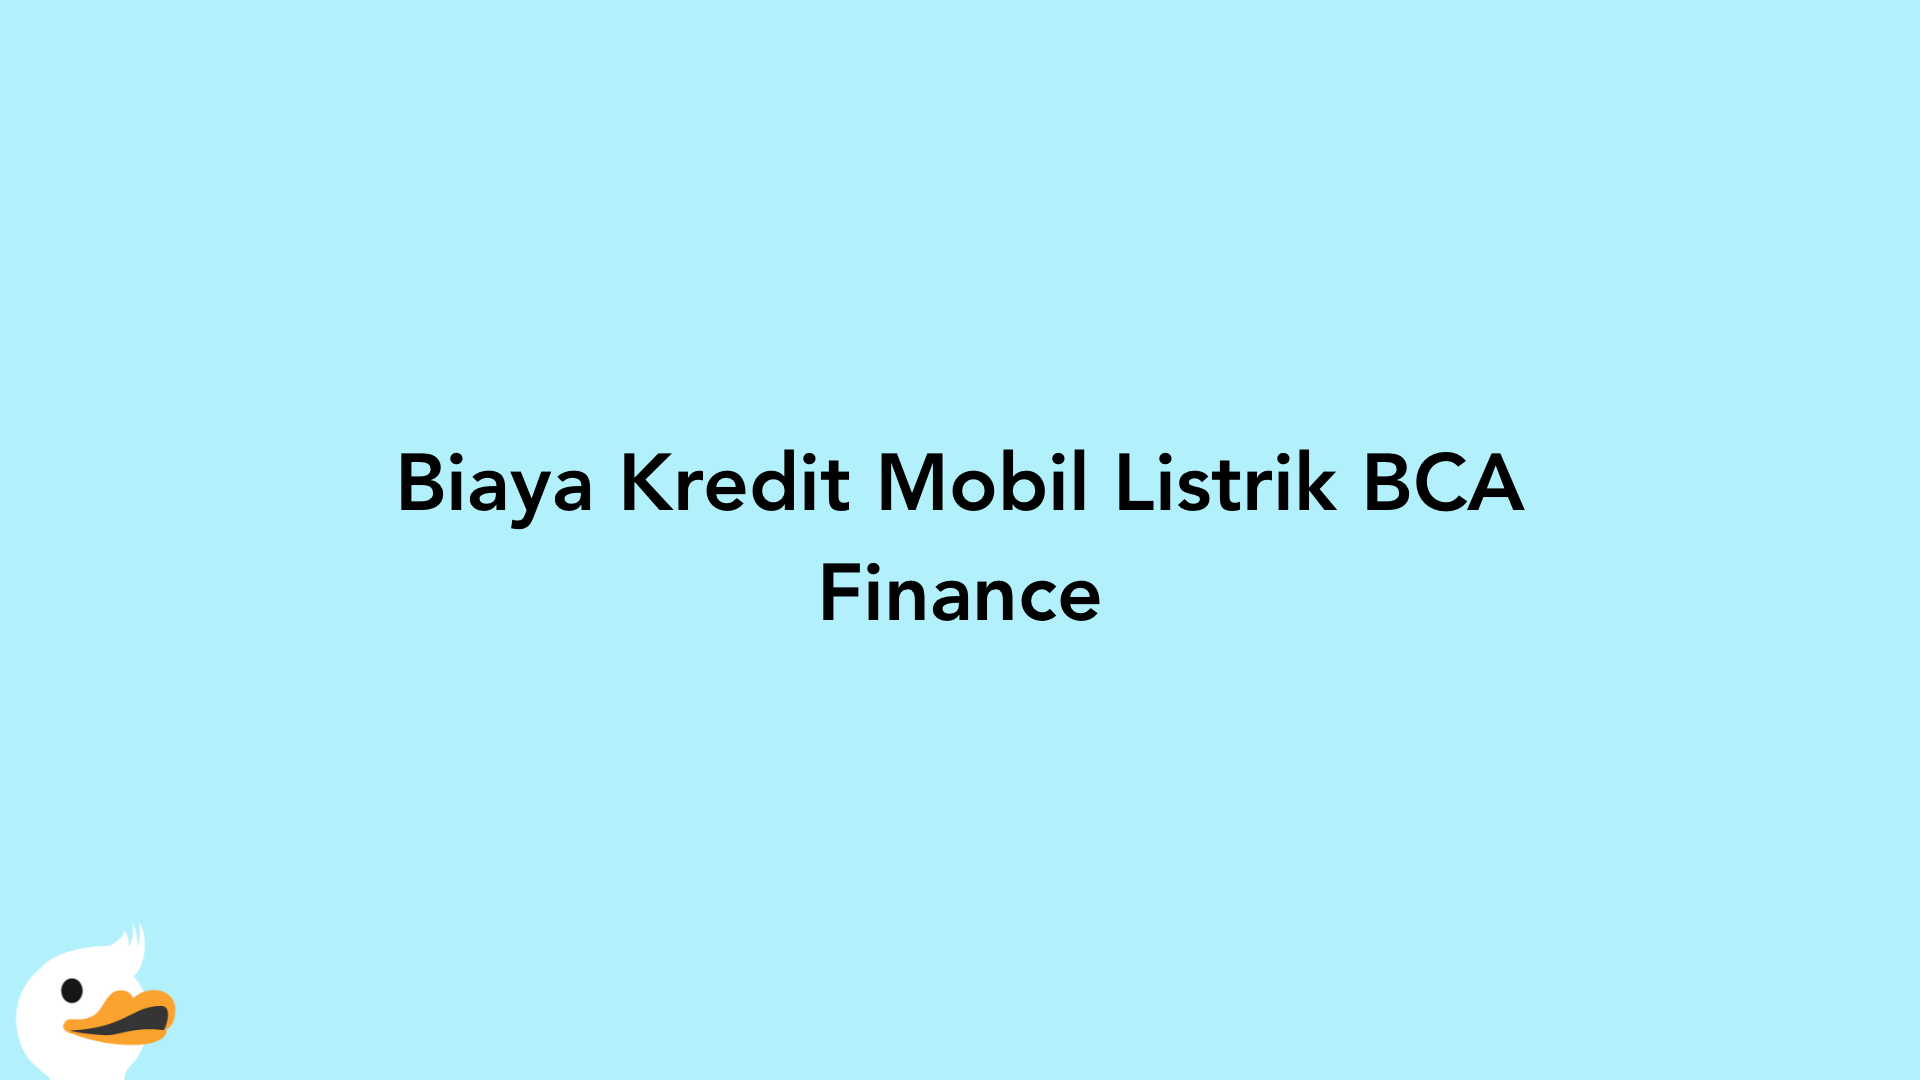 Biaya Kredit Mobil Listrik BCA Finance